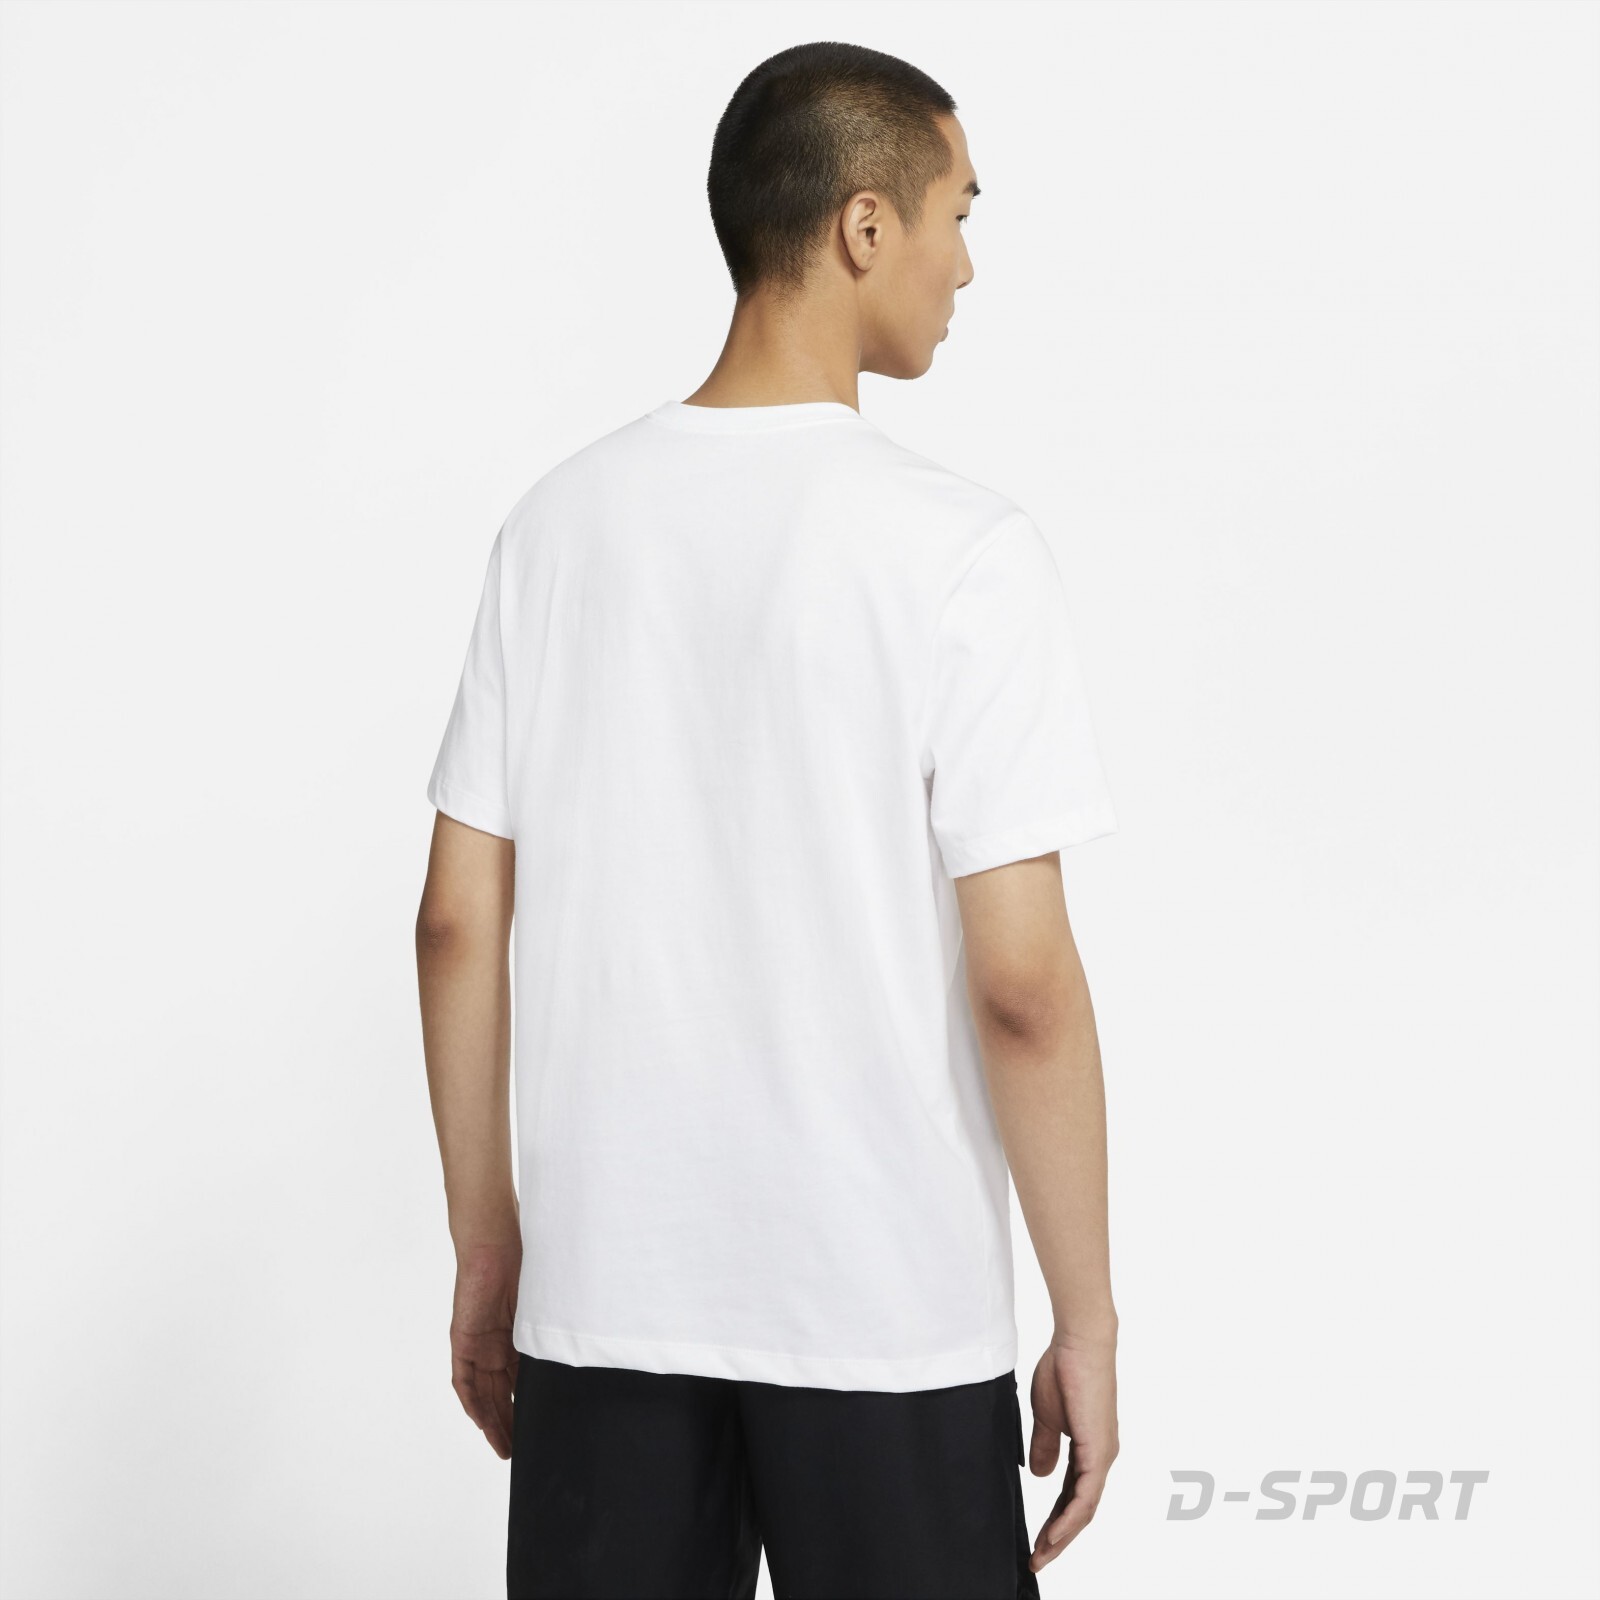 Nike Sportswear Swoosh